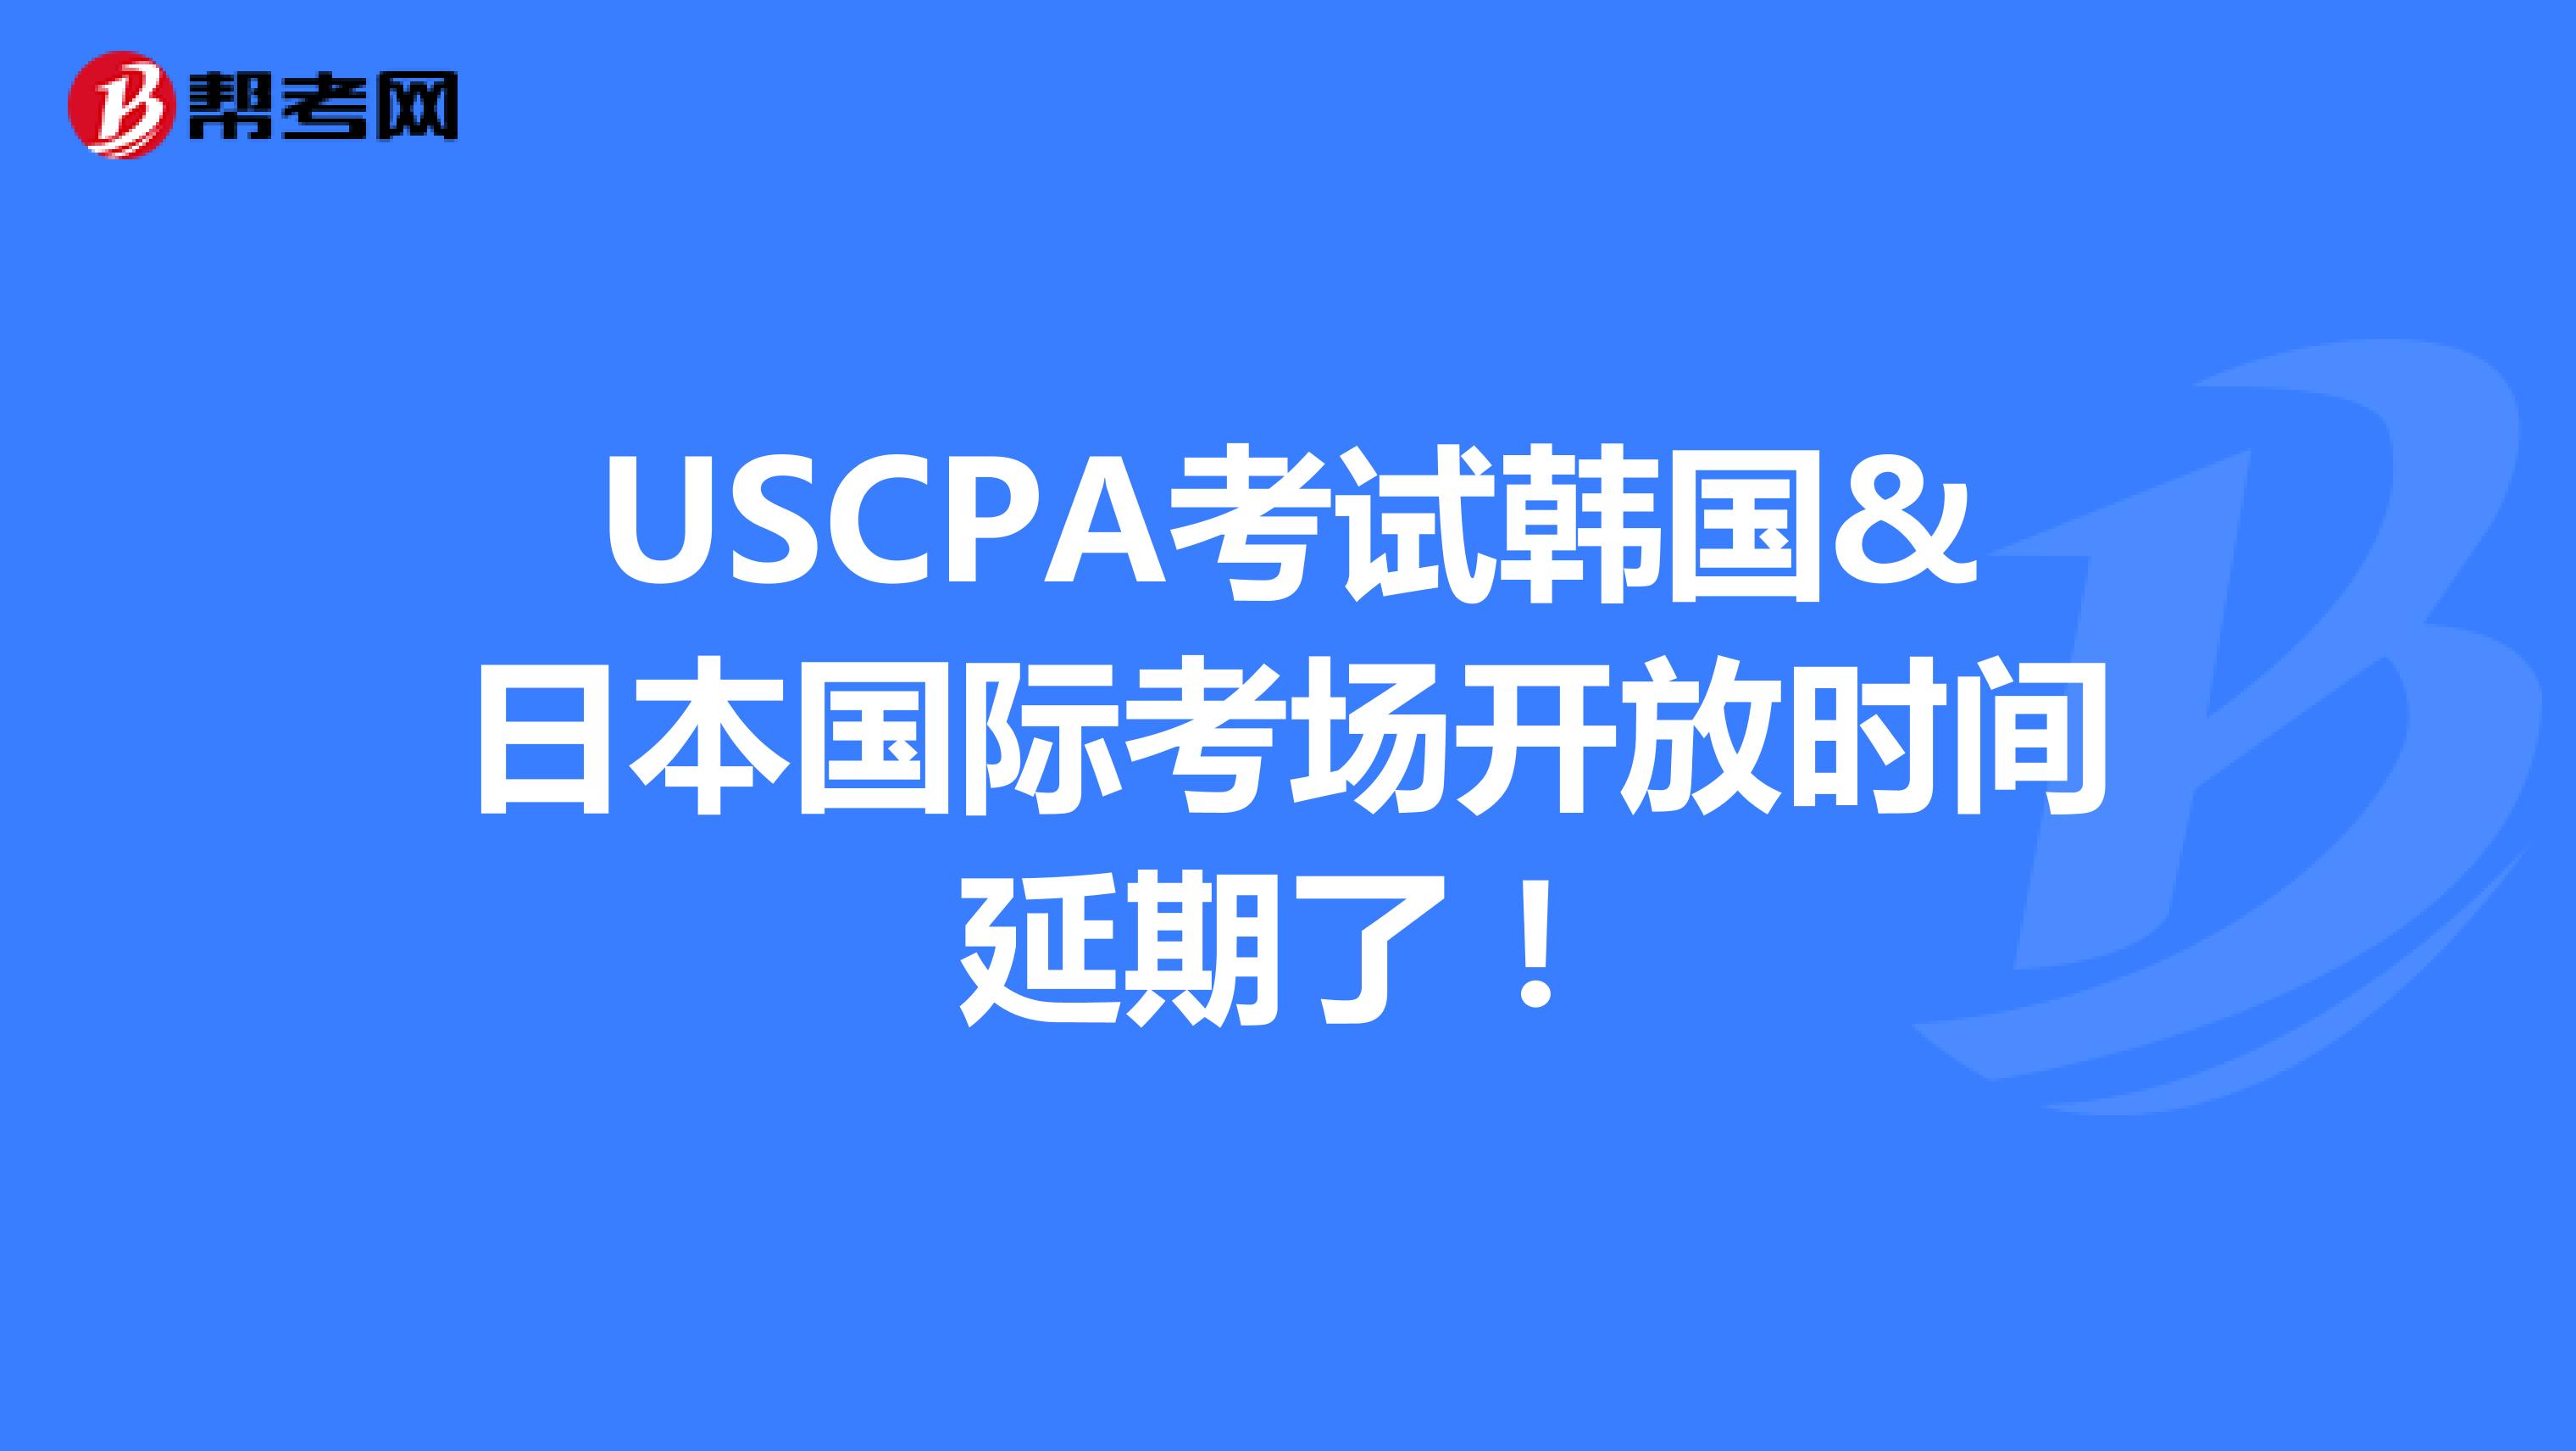 USCPA考试韩国&日本国际考场开放时间延期了！